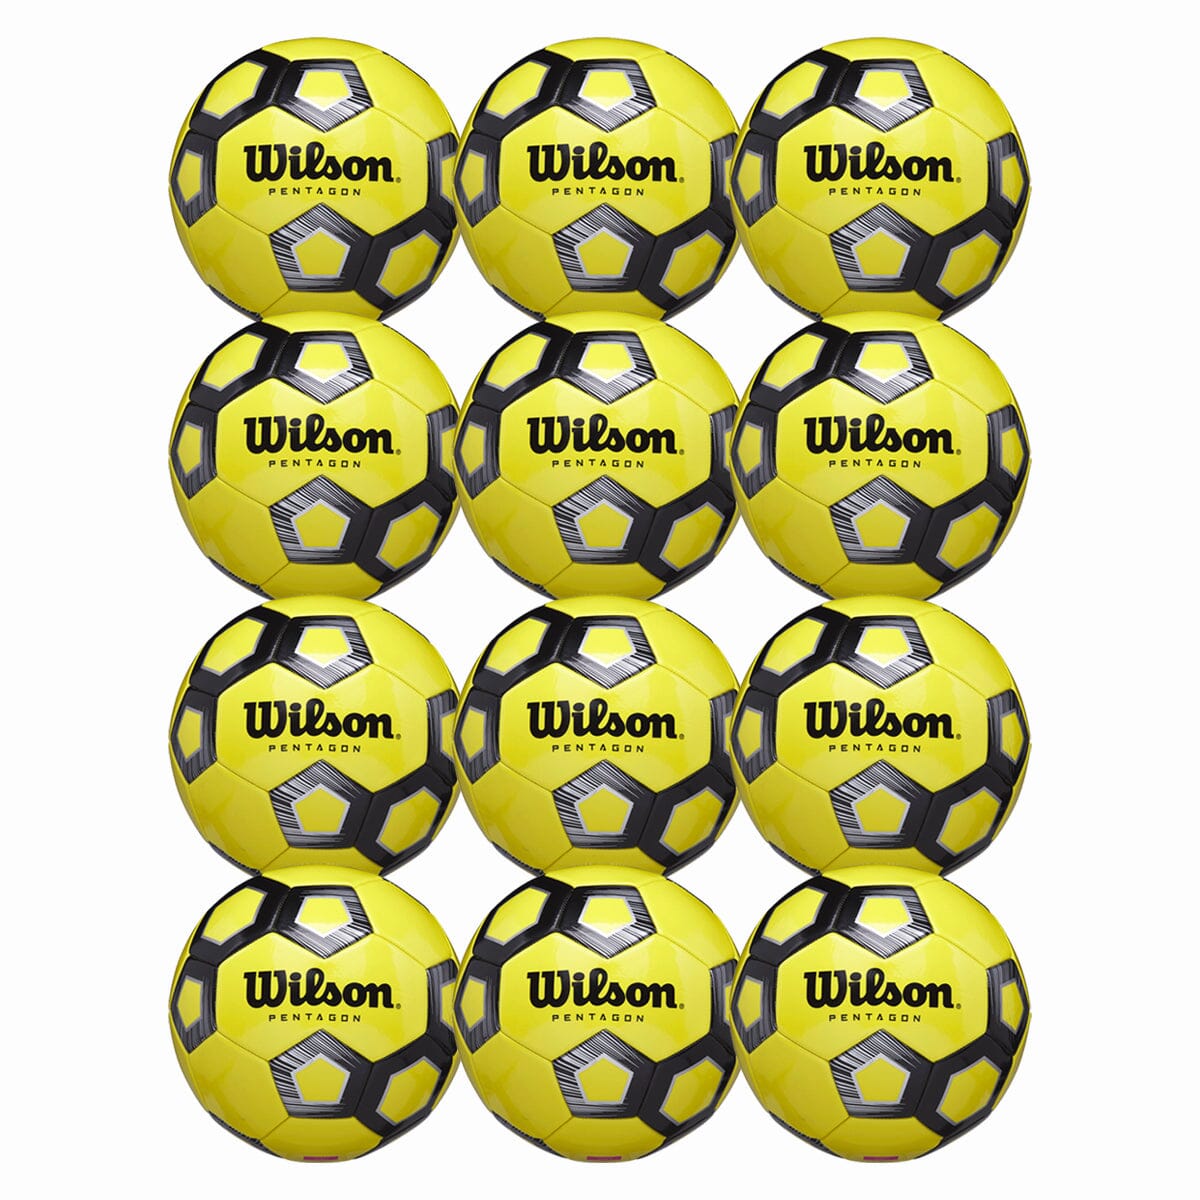 Wilson, Wilson Pentagon Soccer Ball - 12 Packs